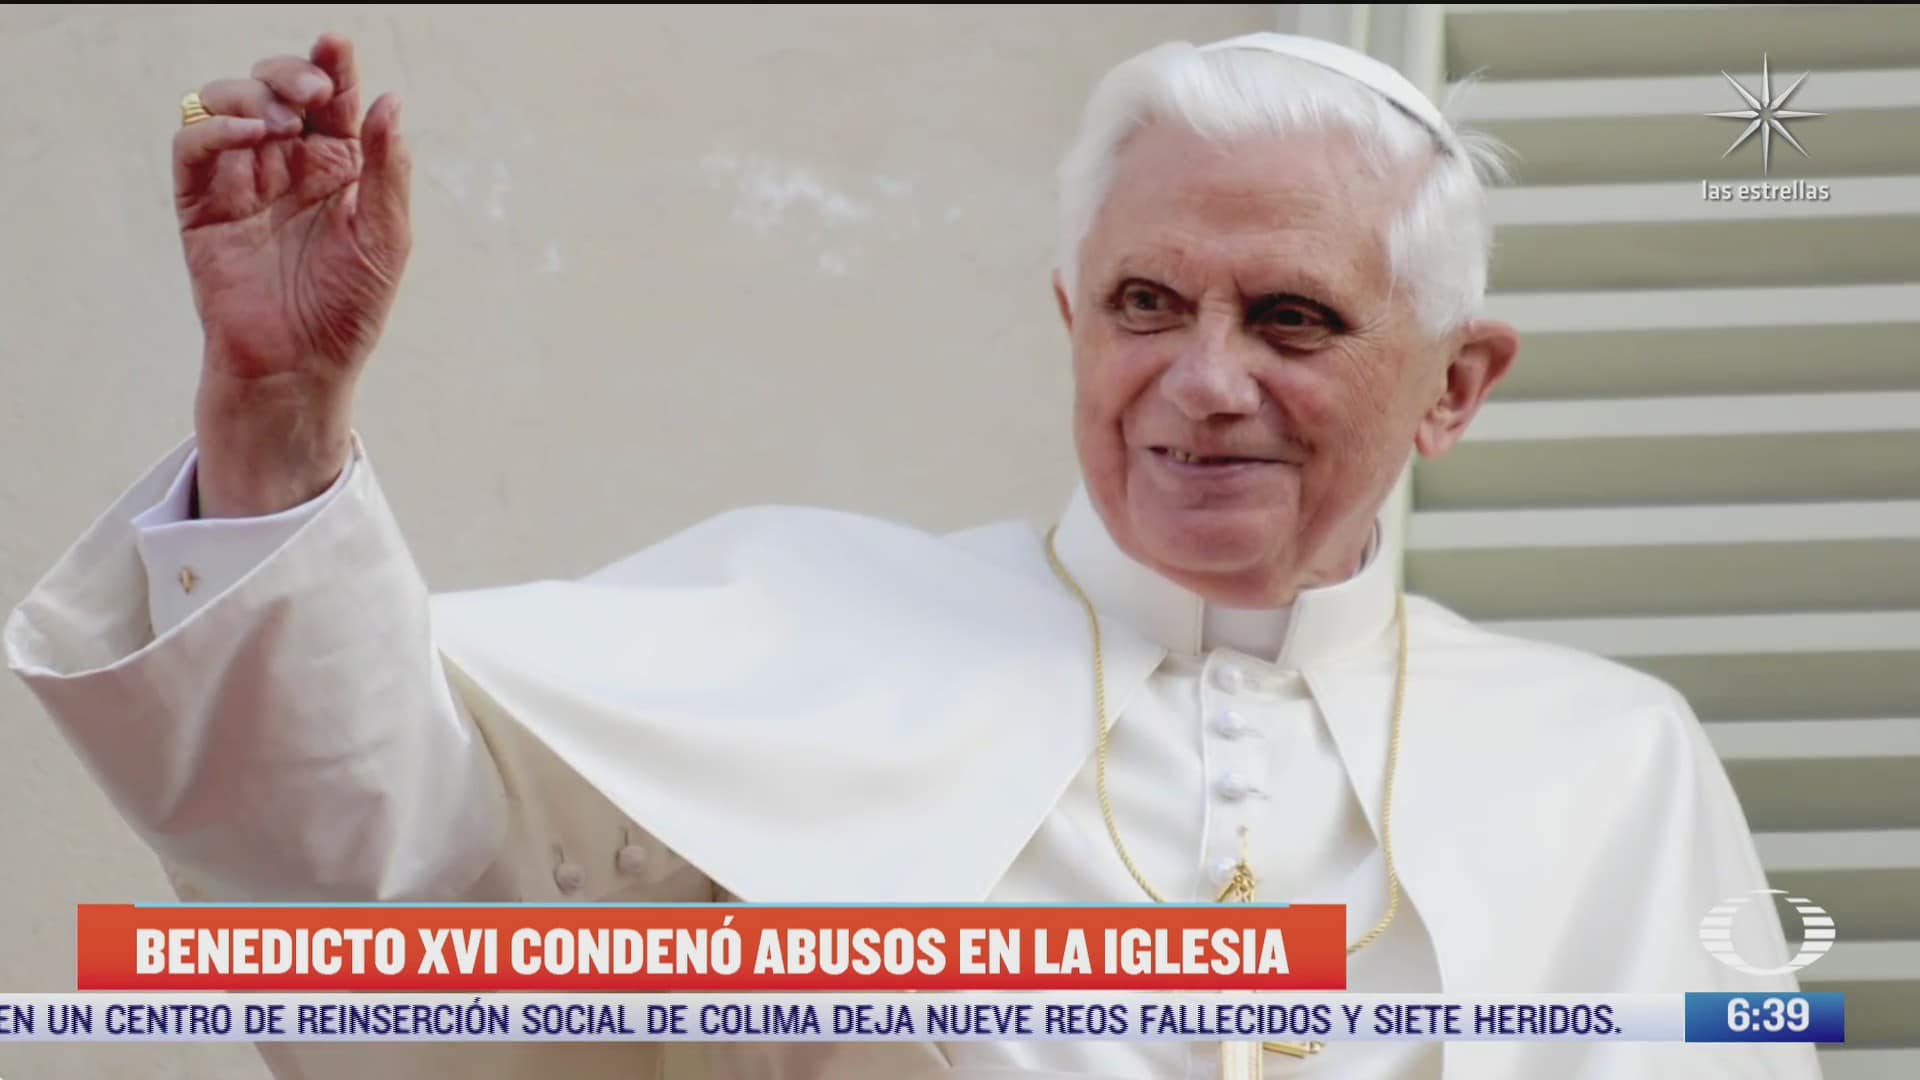 benedicto xvi condeno abusos sexuales dentro de la iglesia catolica dice el vaticano